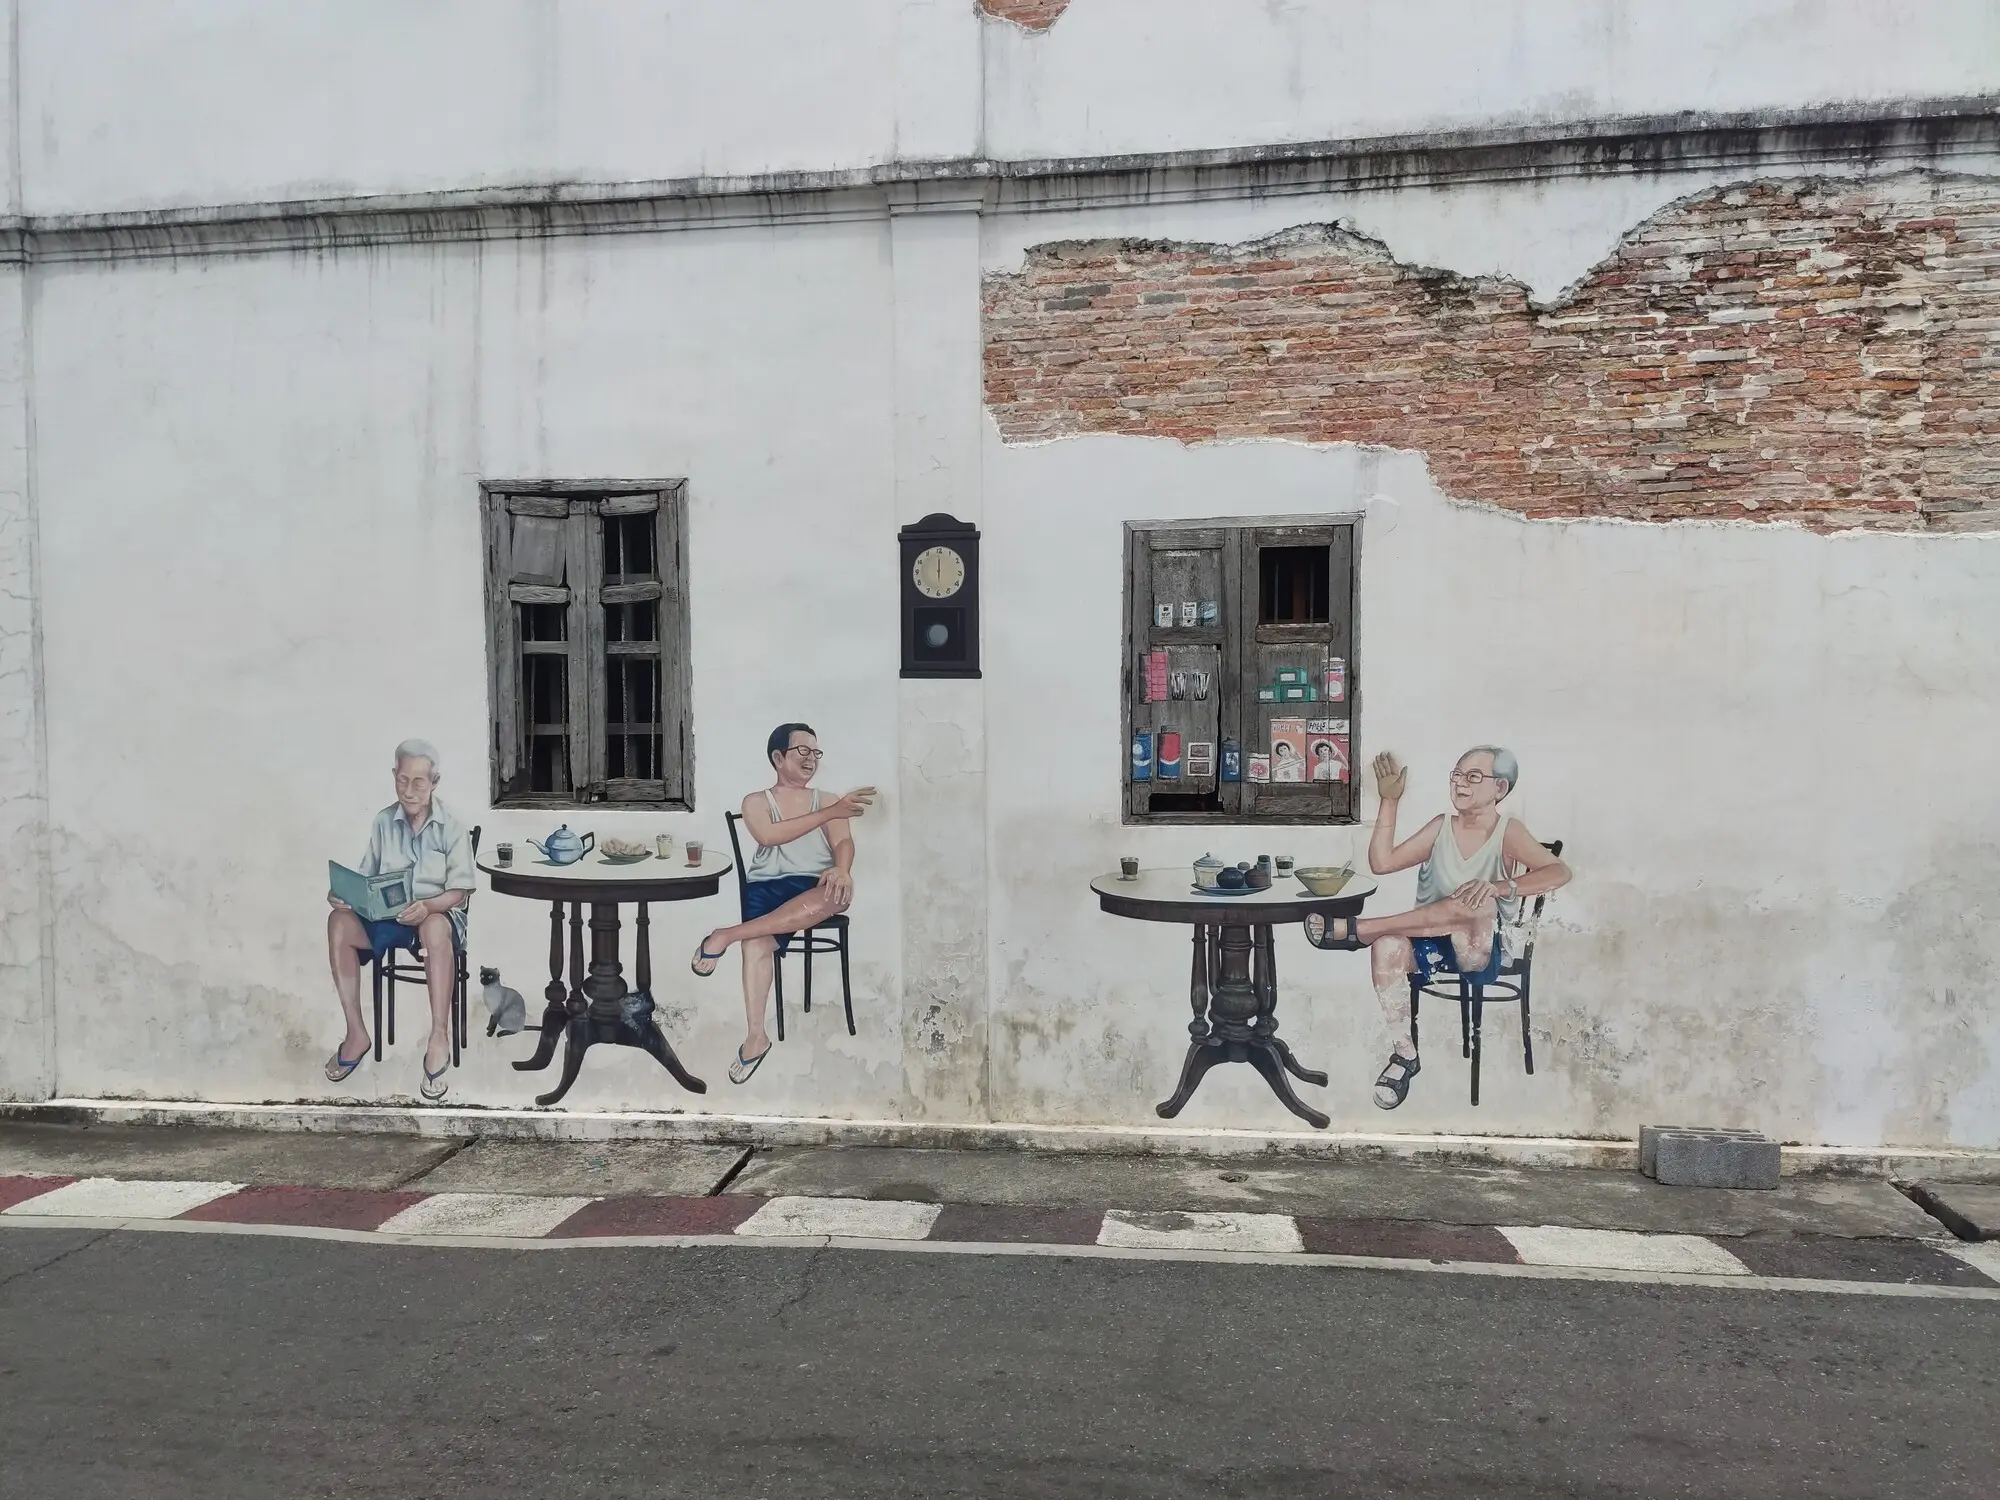 Фотография уличной стены со стрит-артом. Нарисованы три человека, сидящих за двумя столами. Один читает книгу, двое машут друг другу. Наружняя часть старого окна разрисована как полки с бакалеей.